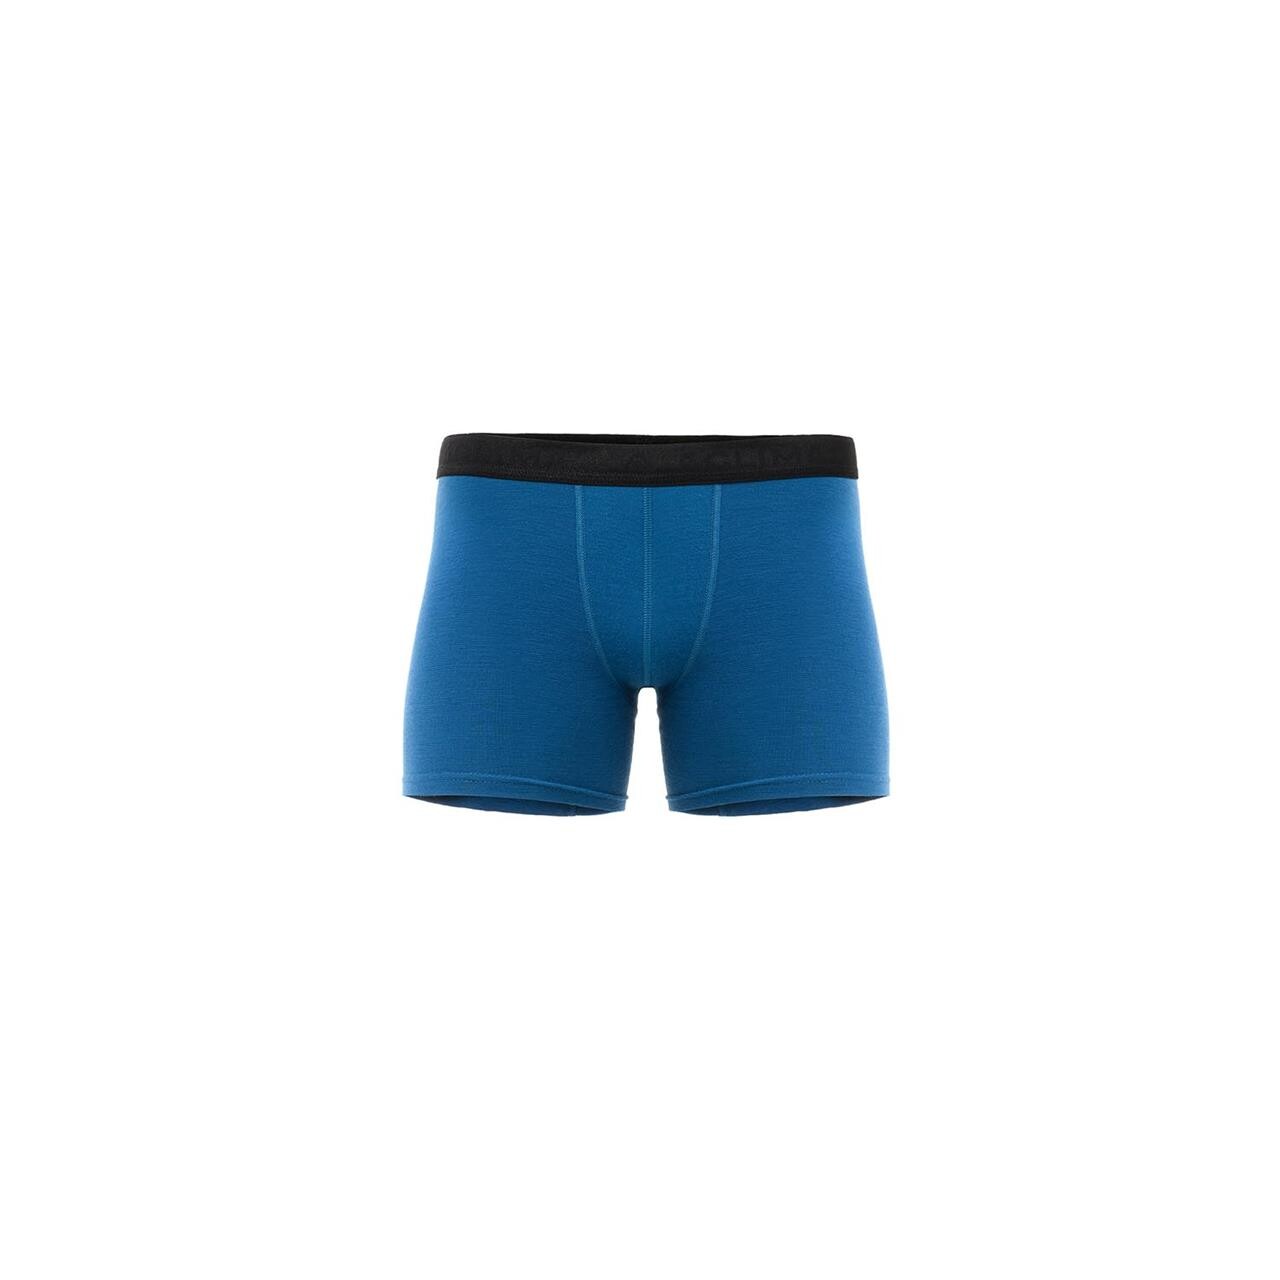 Aclima Mens WarmWool Boxer Shorts  (Blå (CORSAIR) Large)